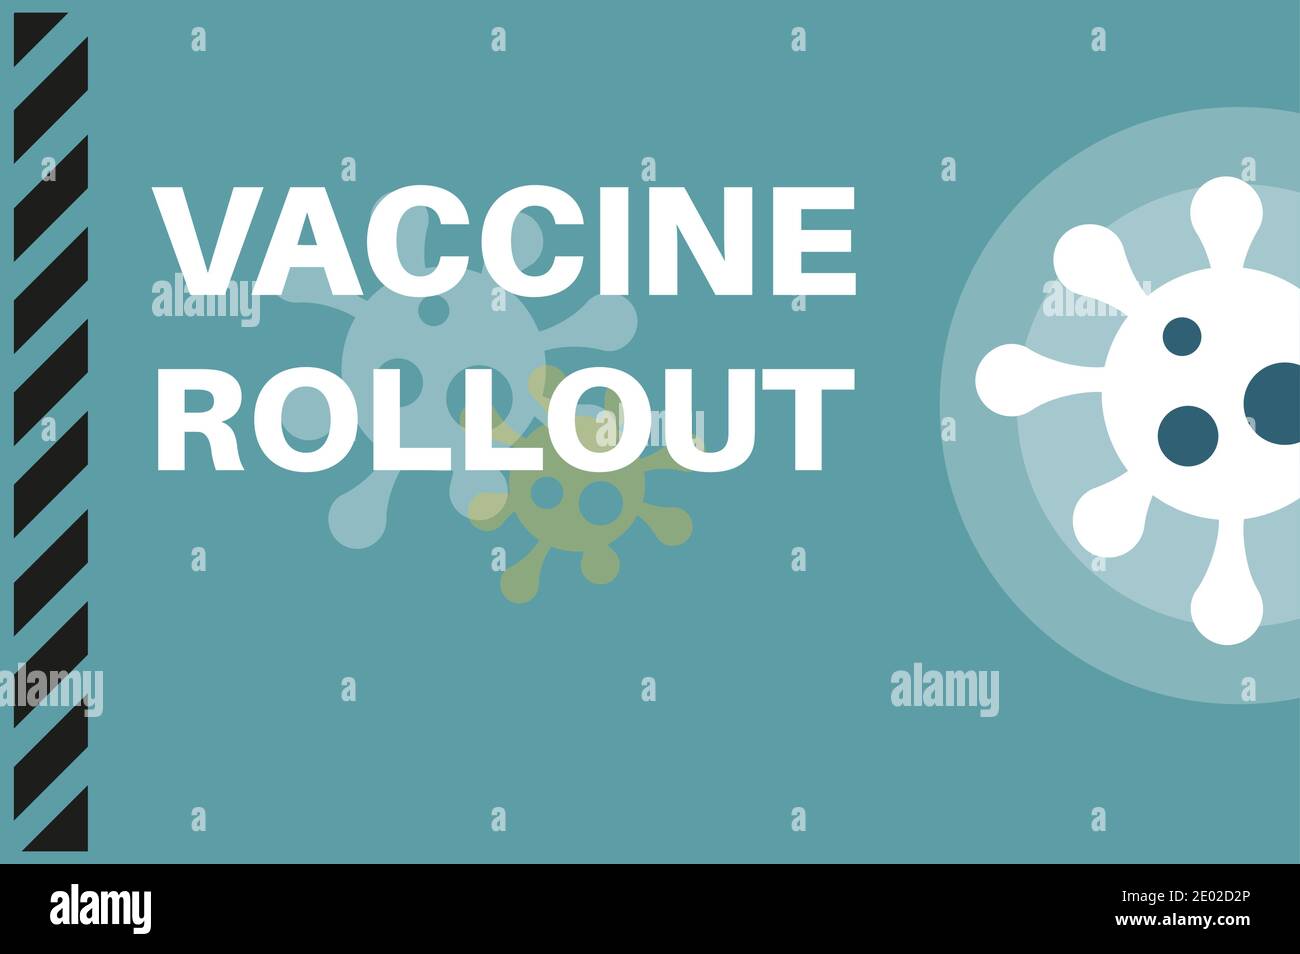 Vaccine Rollout - Illustrazione con i loghi dei virus su sfondo blu. Illustrazione Vettoriale